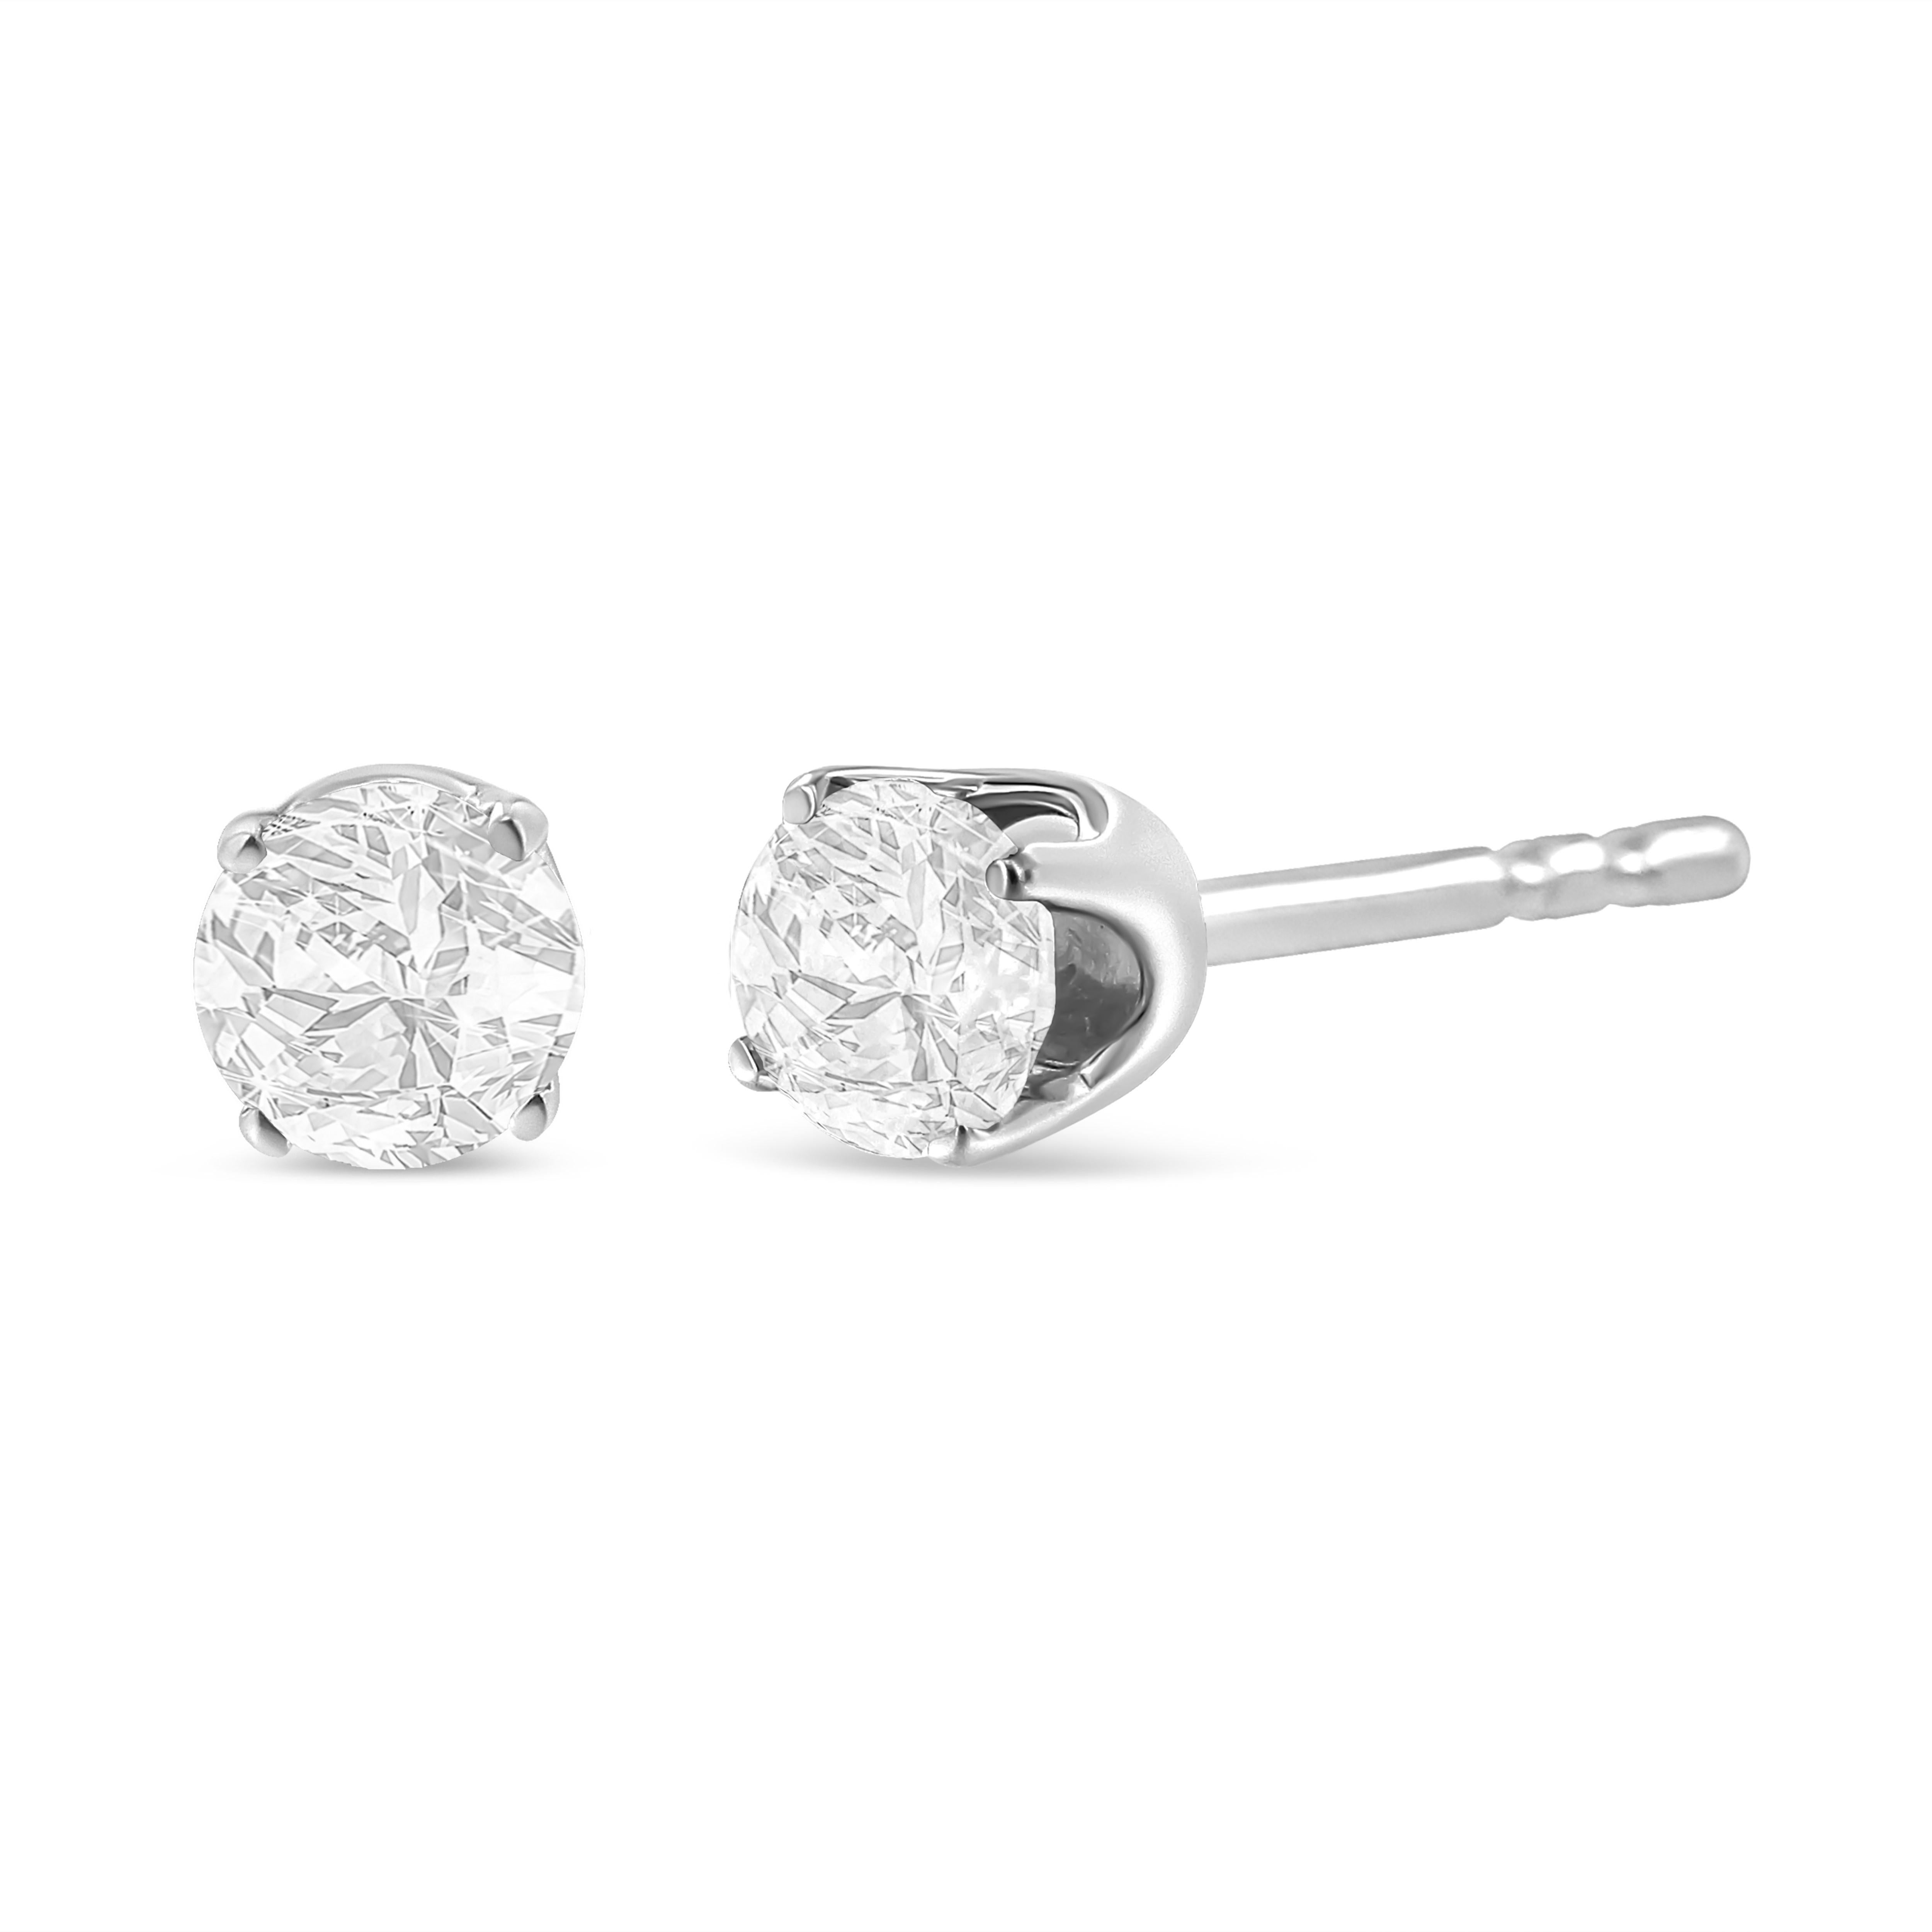 Erleben Sie den Inbegriff von Eleganz mit unseren AGS-zertifizierten Diamant-Ohrsteckern, die exklusiv für das Haus of Brilliance entworfen wurden. Diese mit unbestreitbarem Engagement für Qualität gefertigten Ohrringe sind ein Zeugnis für die